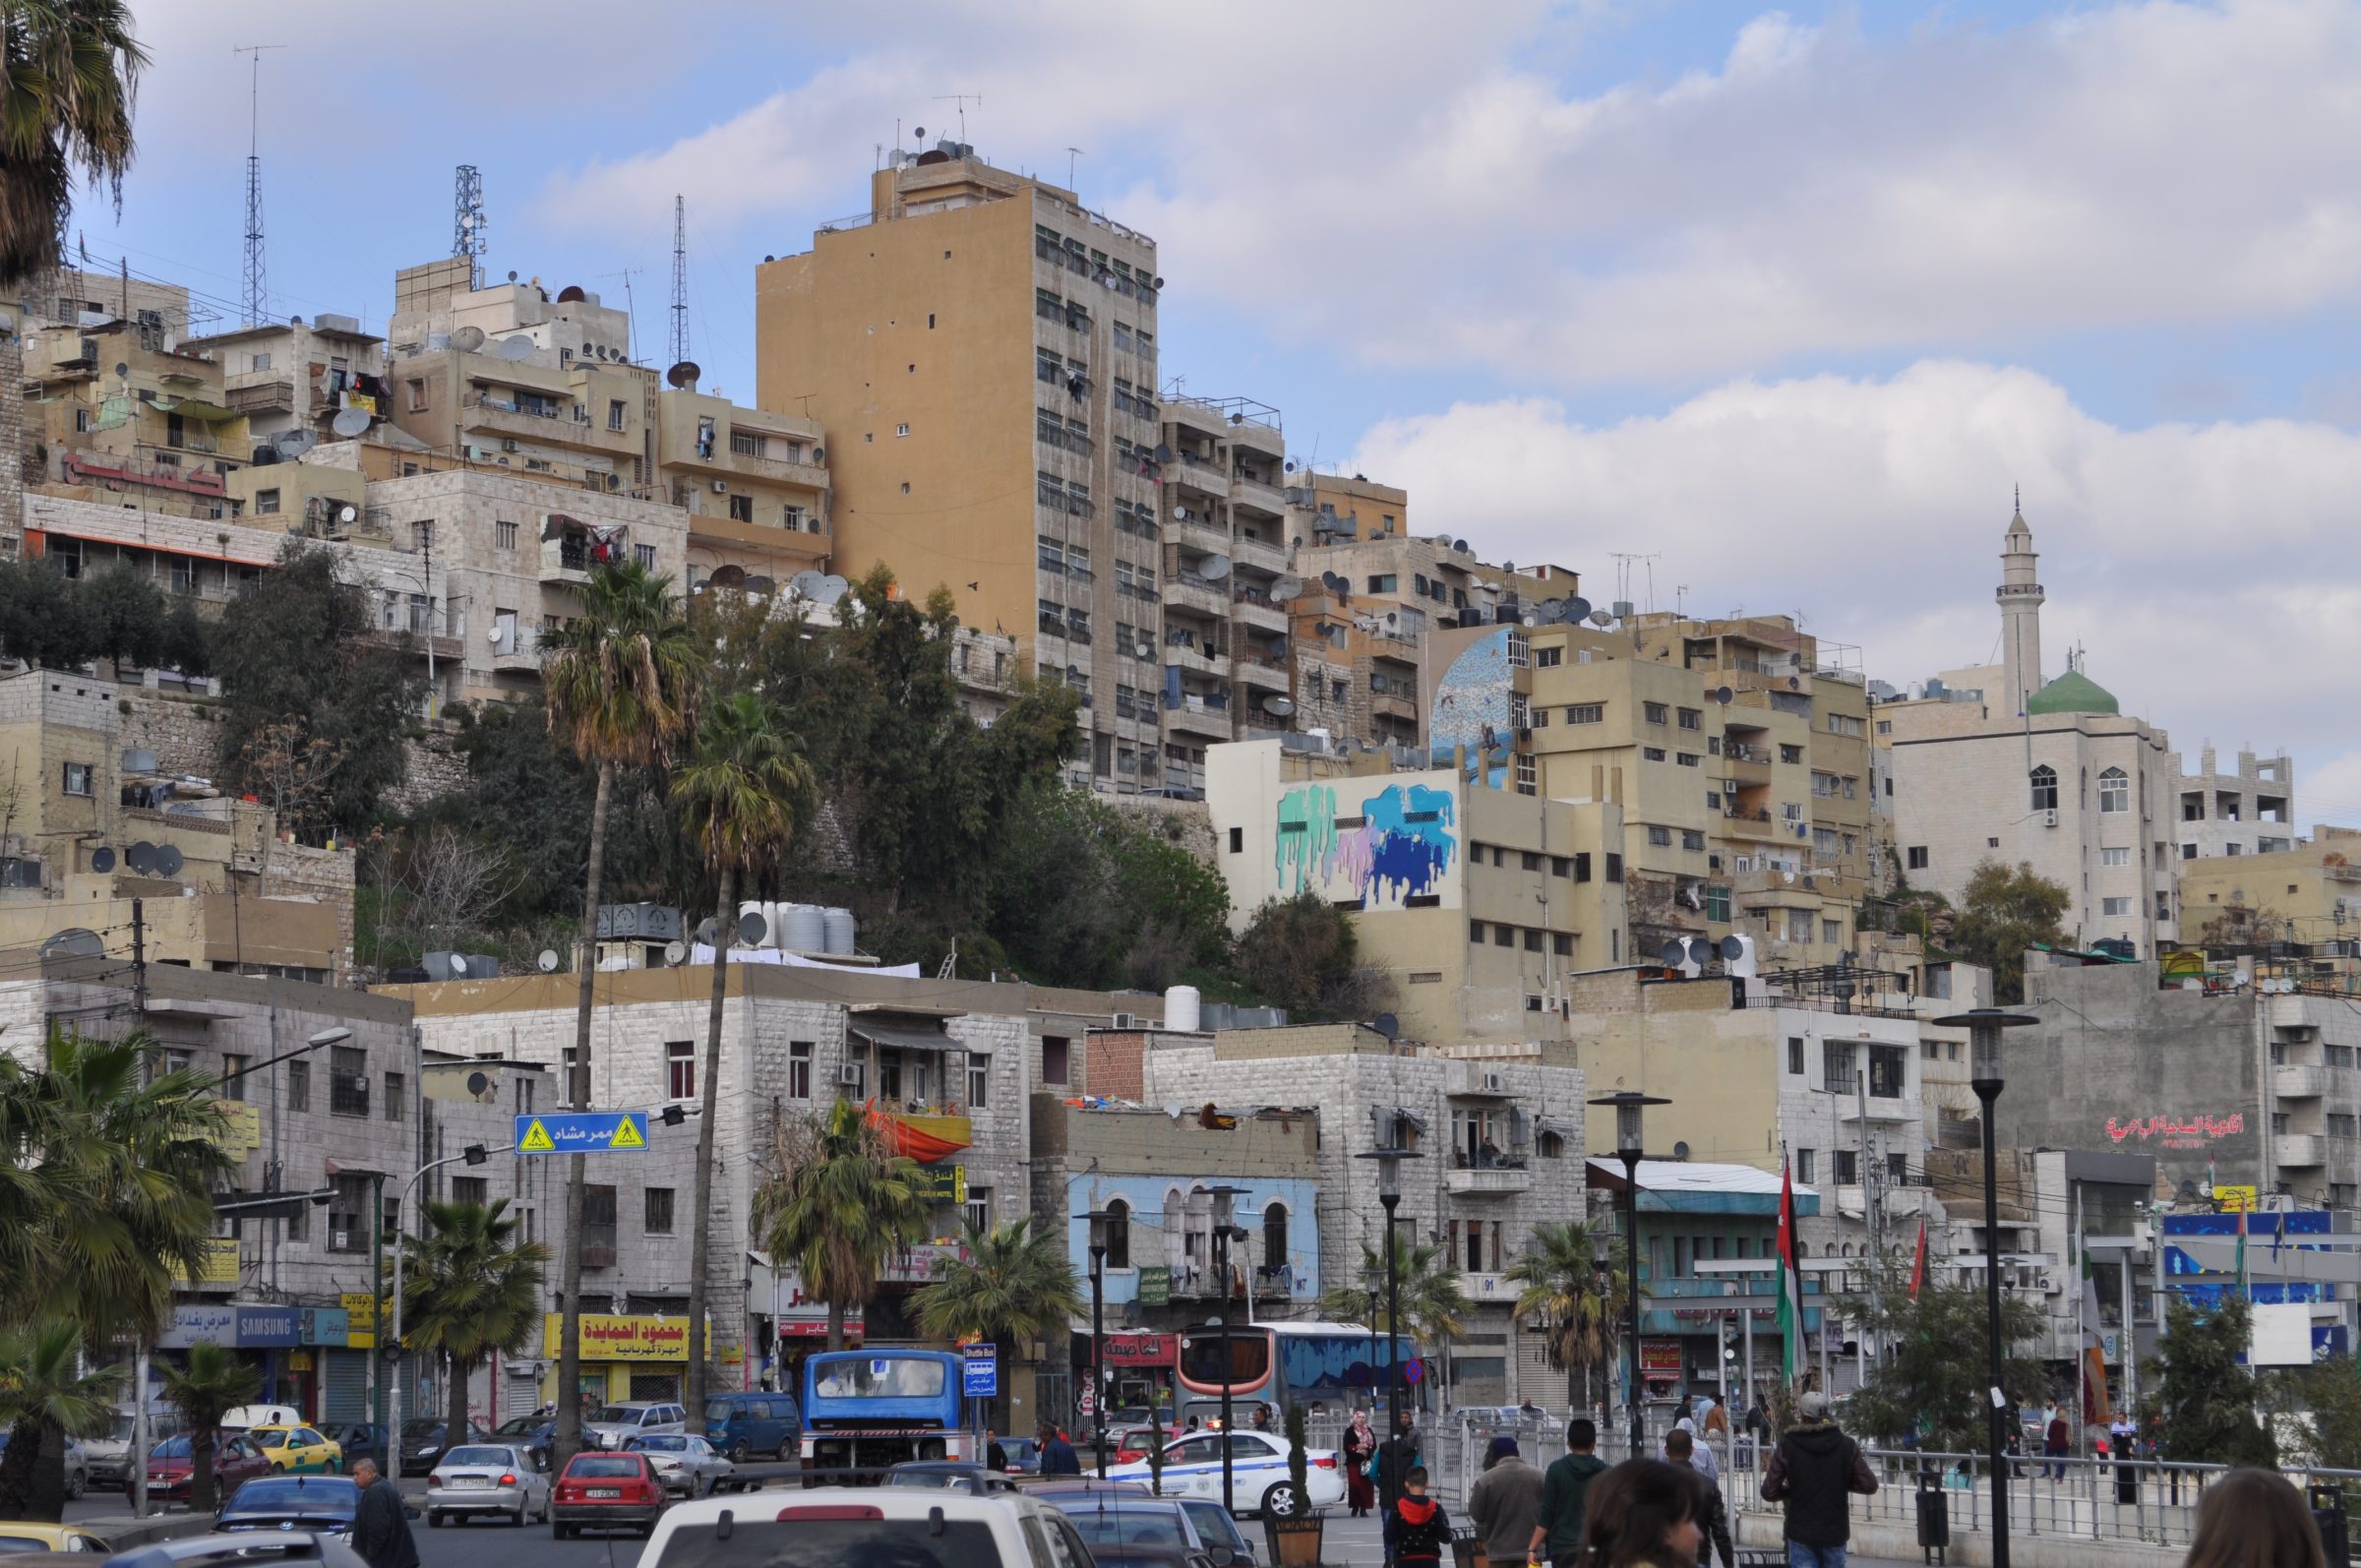 Amman - Downtown